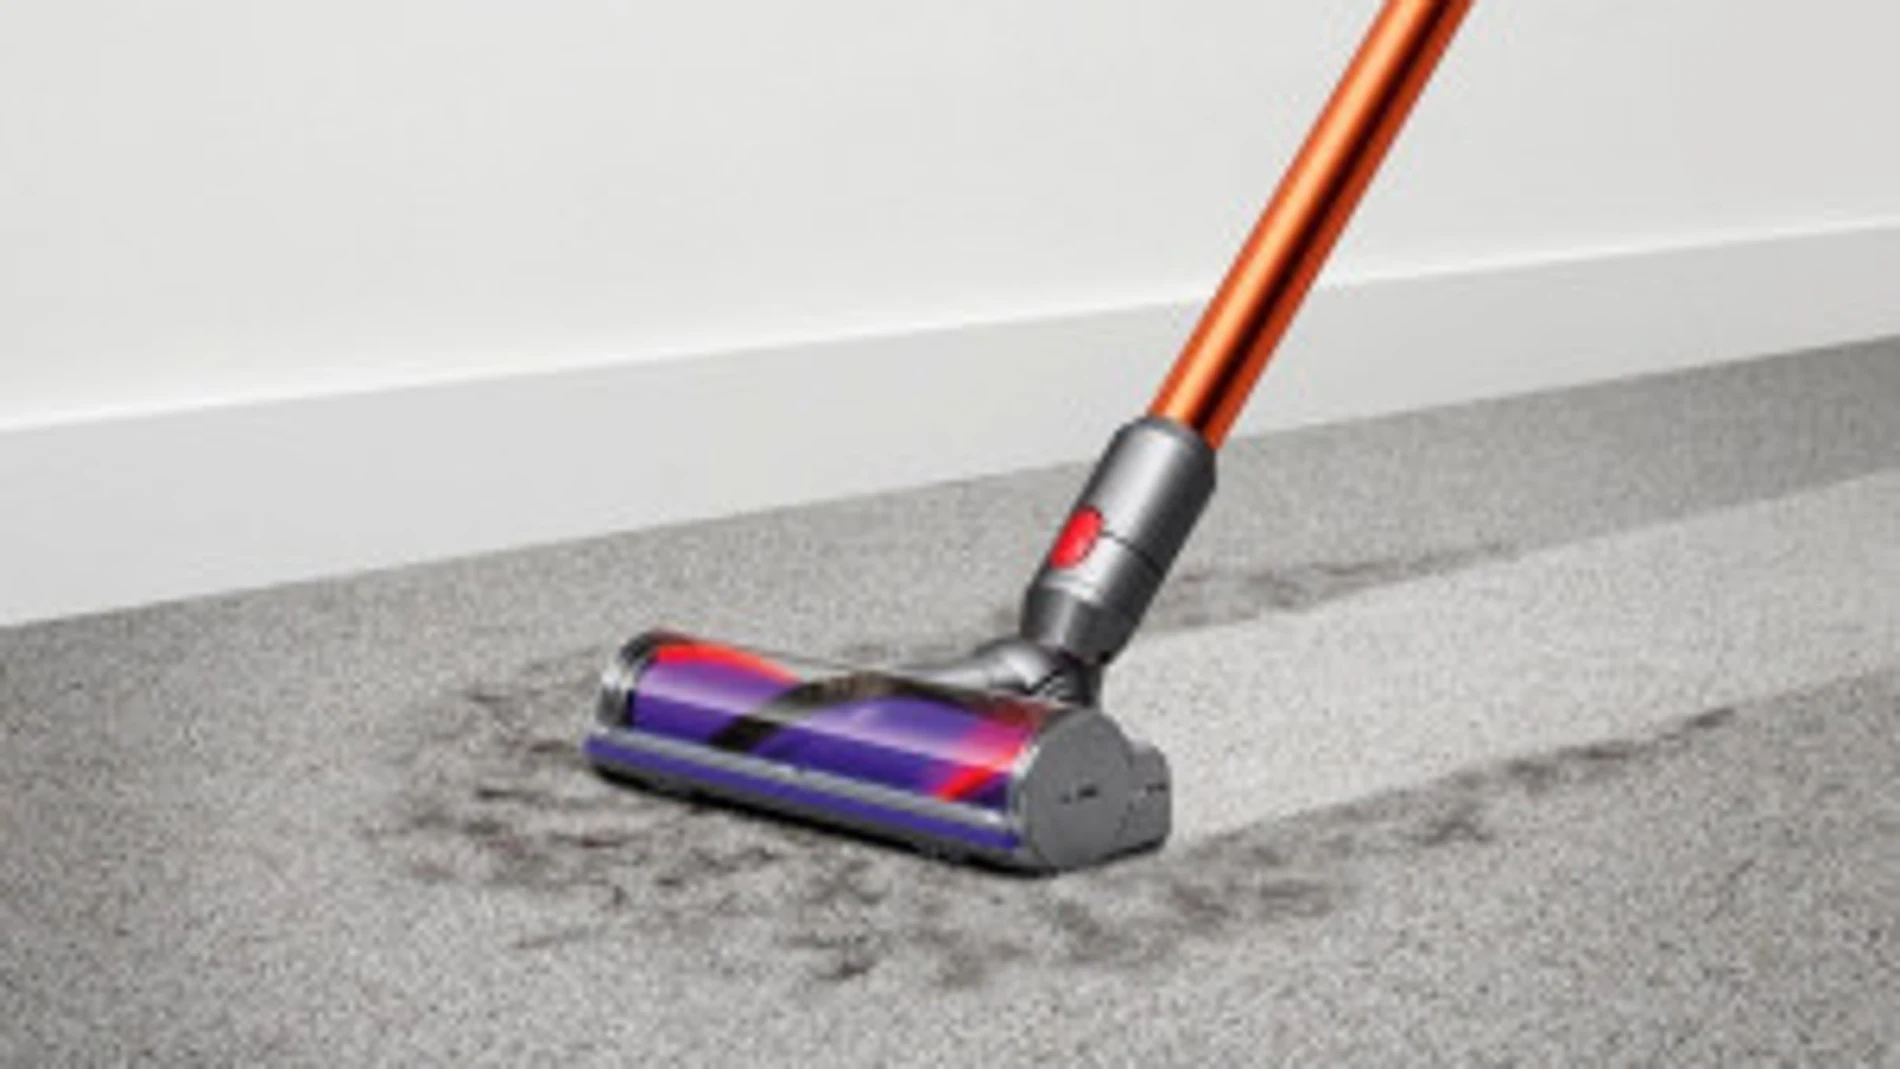 En la imagen, una aspiradora limpiando una alfombra mojada | Fuente: Dyson